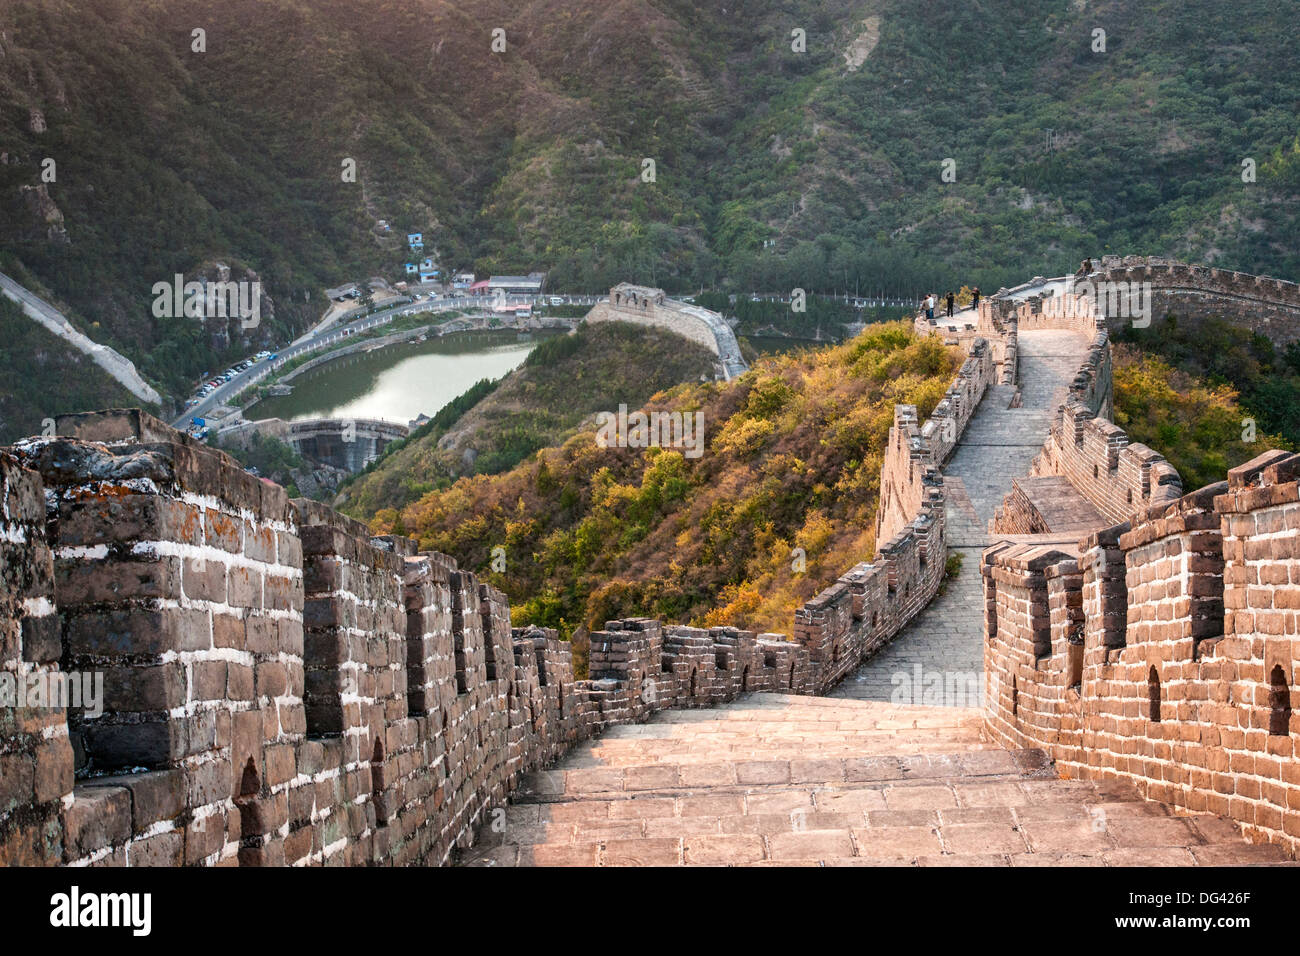 Great Wall of China at Huanghua Cheng or Yellow Flower, Xishulyu, Jiuduhe Zhen, Huairou, China Stock Photo